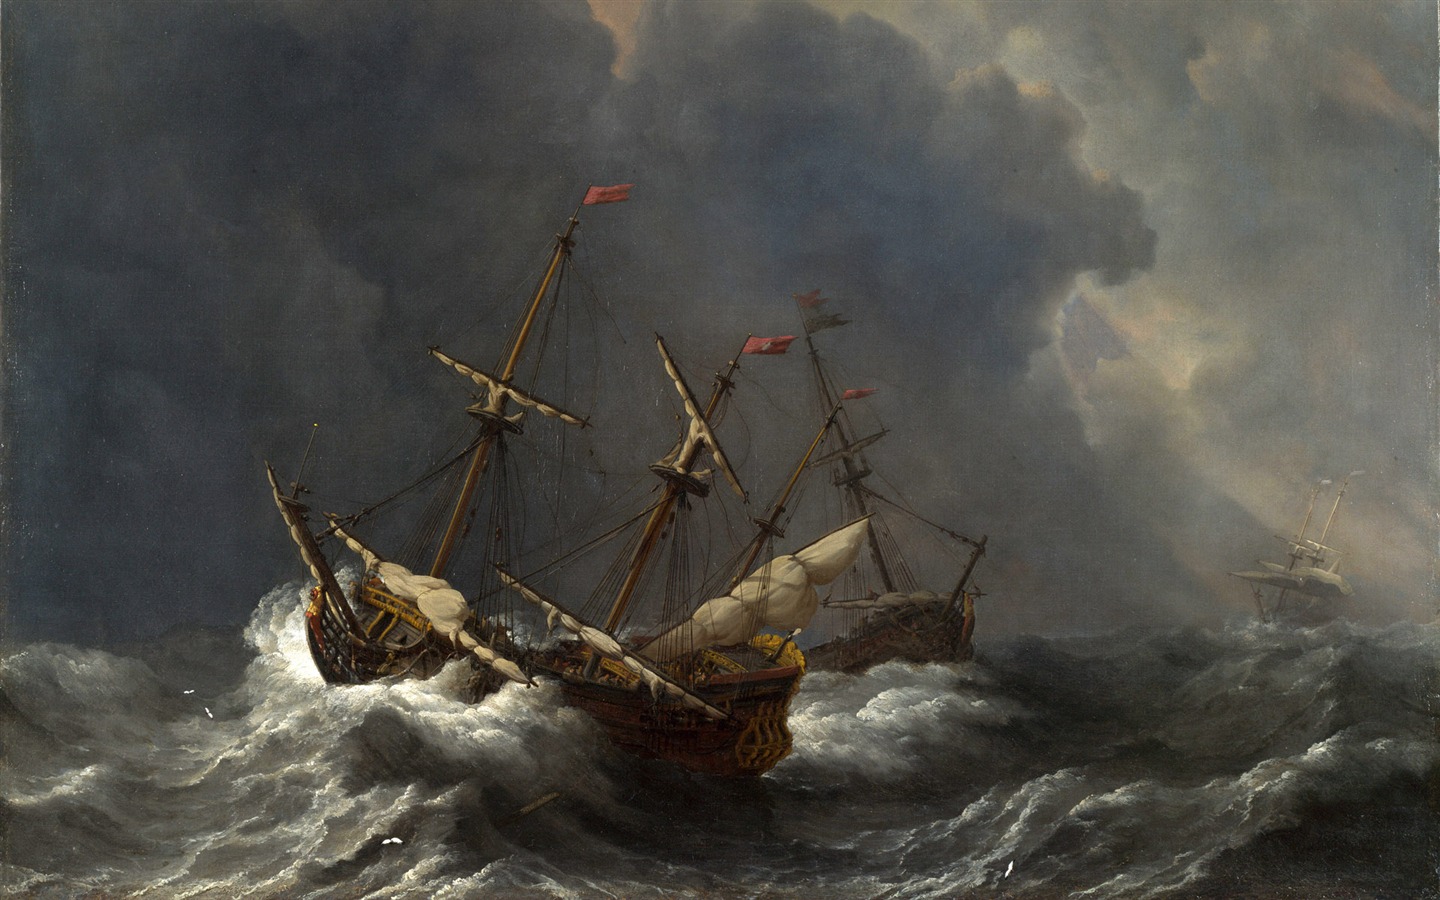 伦敦画廊帆船 壁纸(二)9 - 1440x900